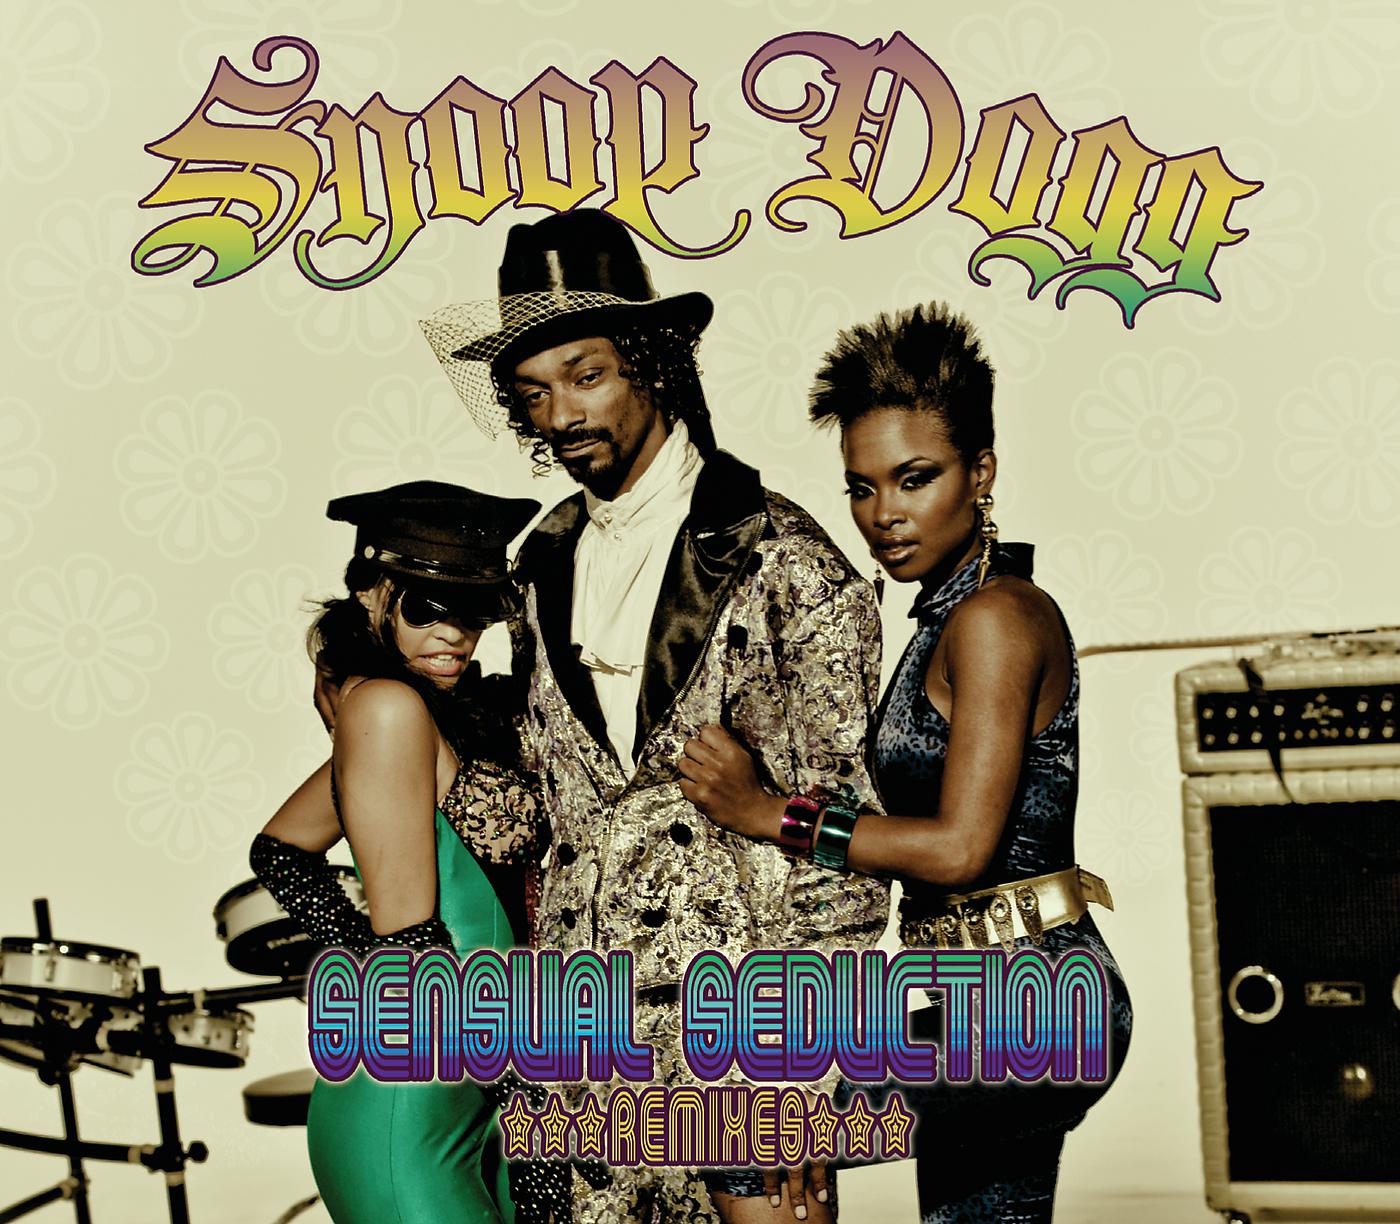 Dogg sensual. Sensual Seduction Snoop. Snoop Dogg sensual Seduction. Snoop Dogg sensual Eruption. Музыкальные обложки Snoop Dogg.